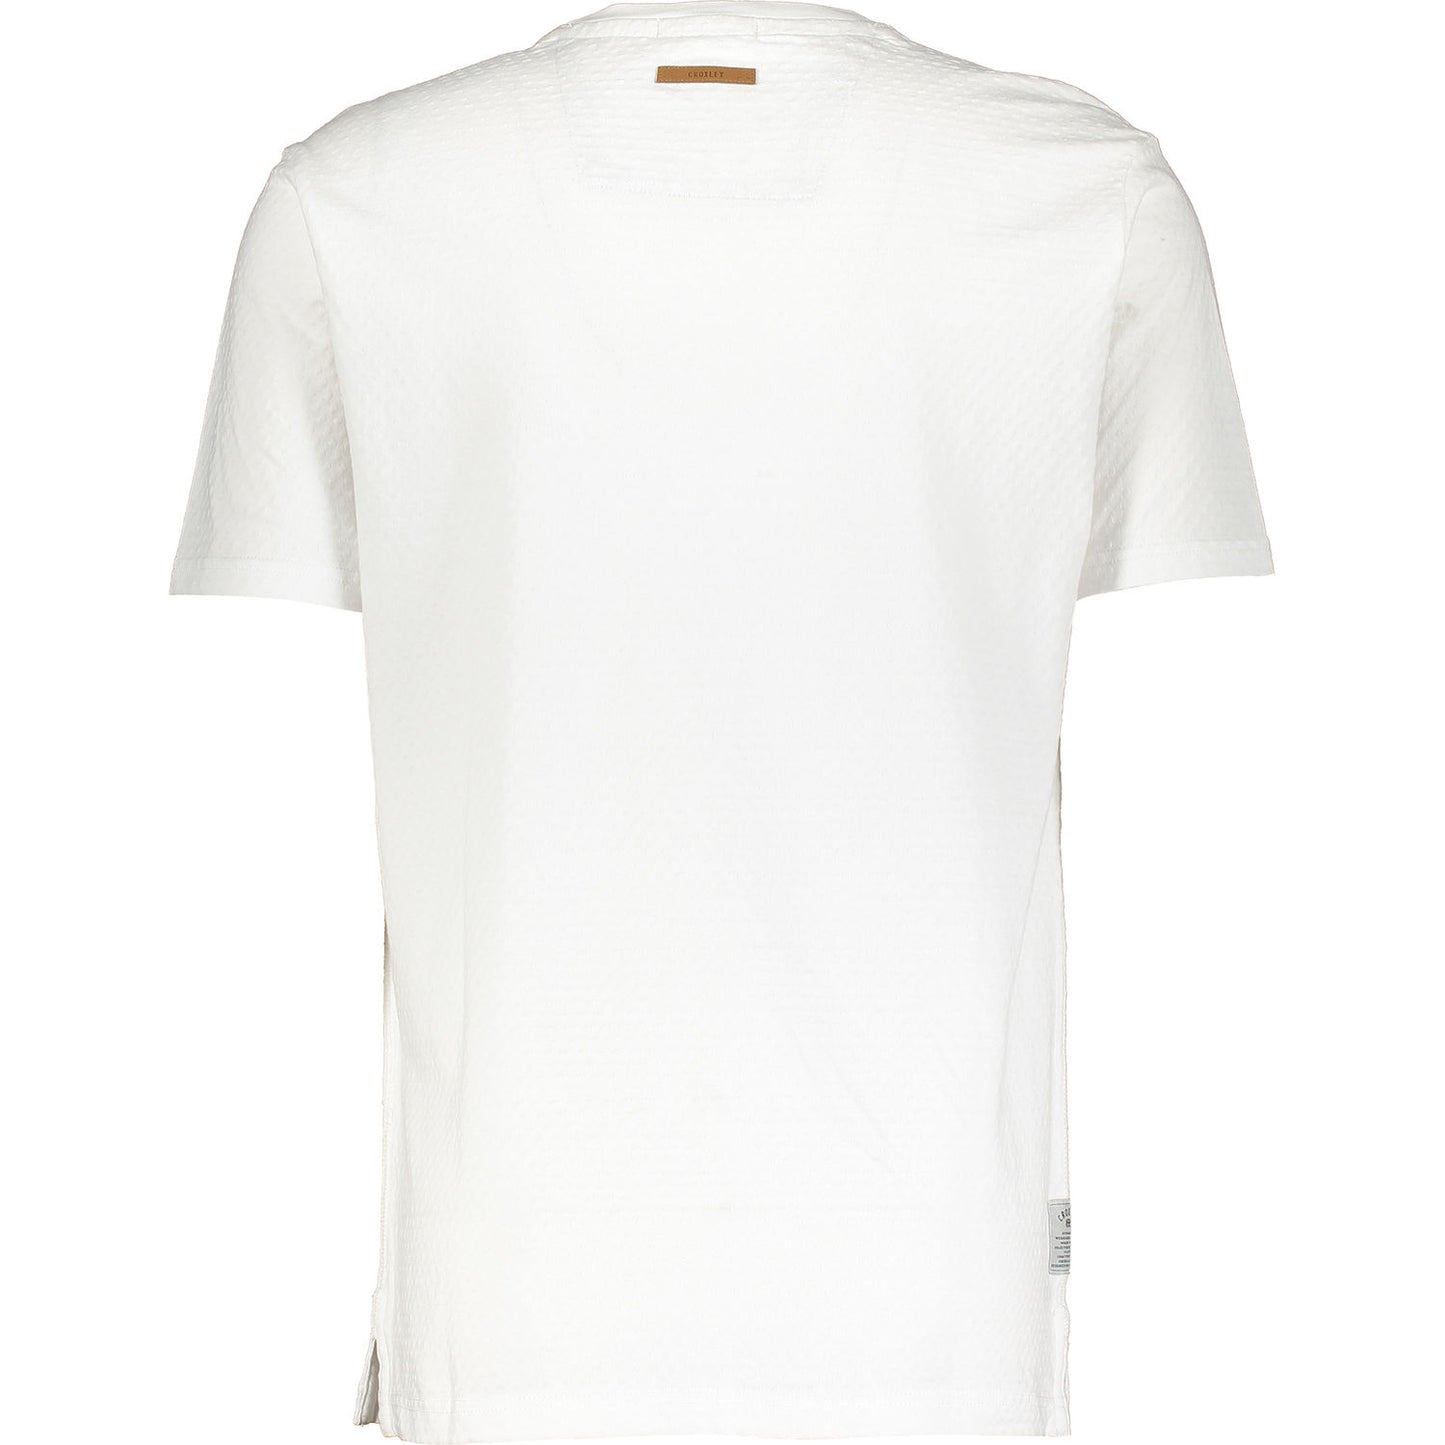 Croxley - Ronnie T-Shirt - LabelledUp.com